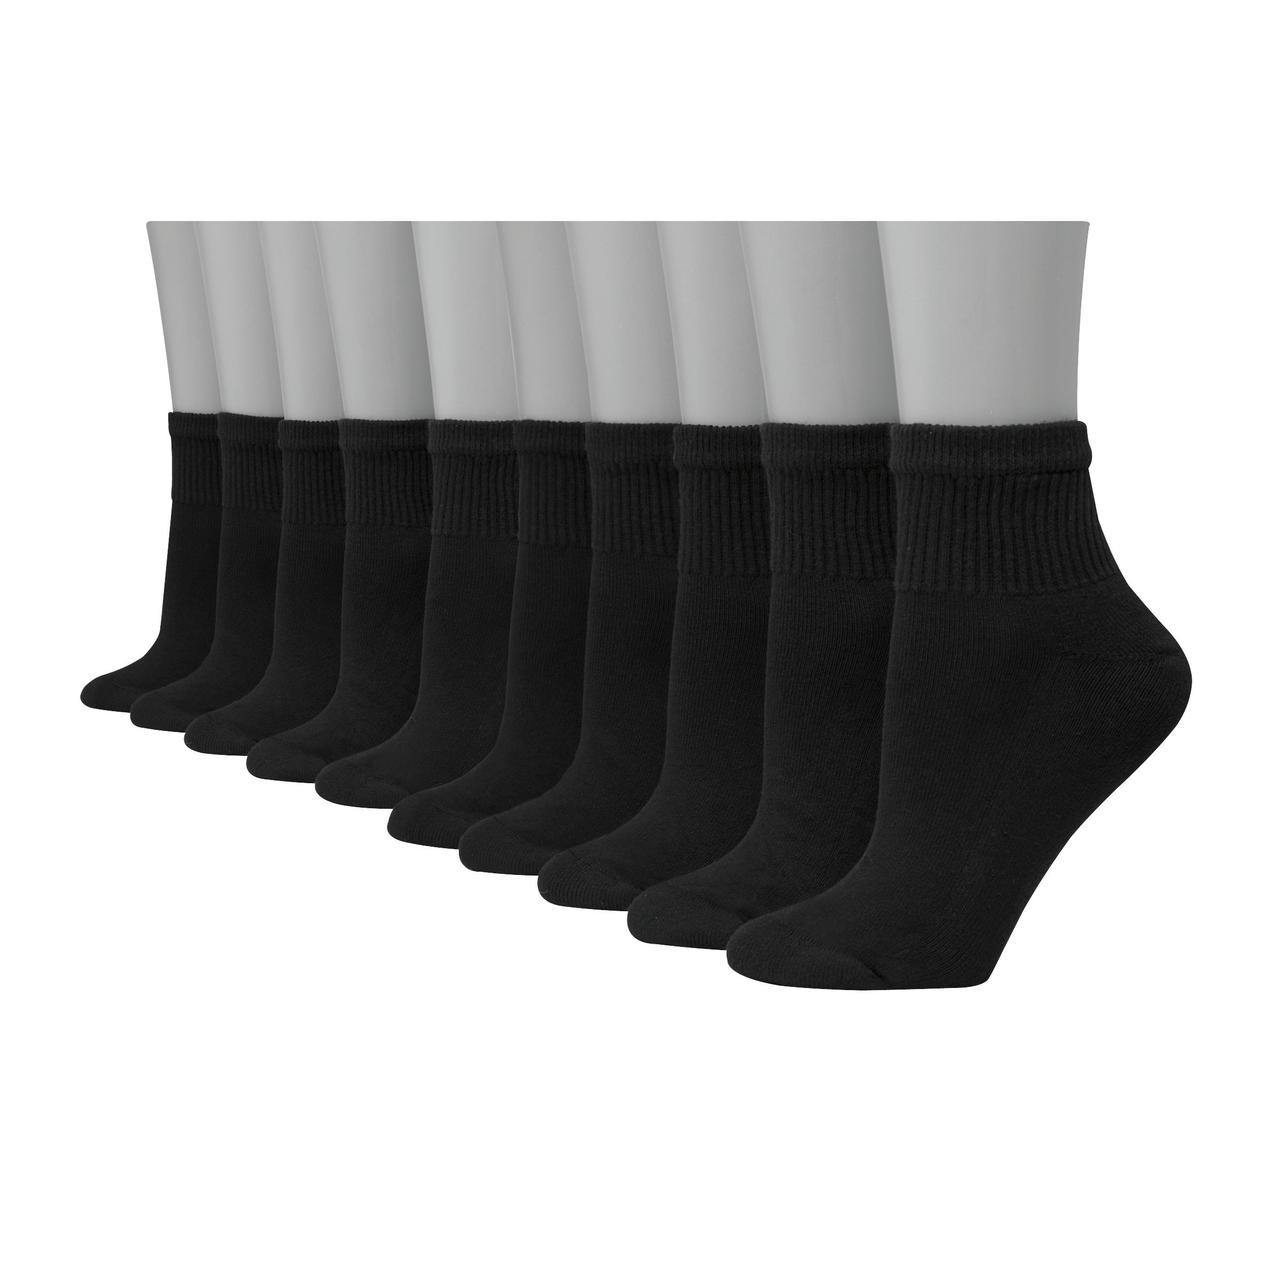 100 Pairs Mens Socks Bulk Moisture Wicking Socks Casual Sports Ankle Socks Bulk for Homeless Unisex Adult Men Women (Black, White, Gray)